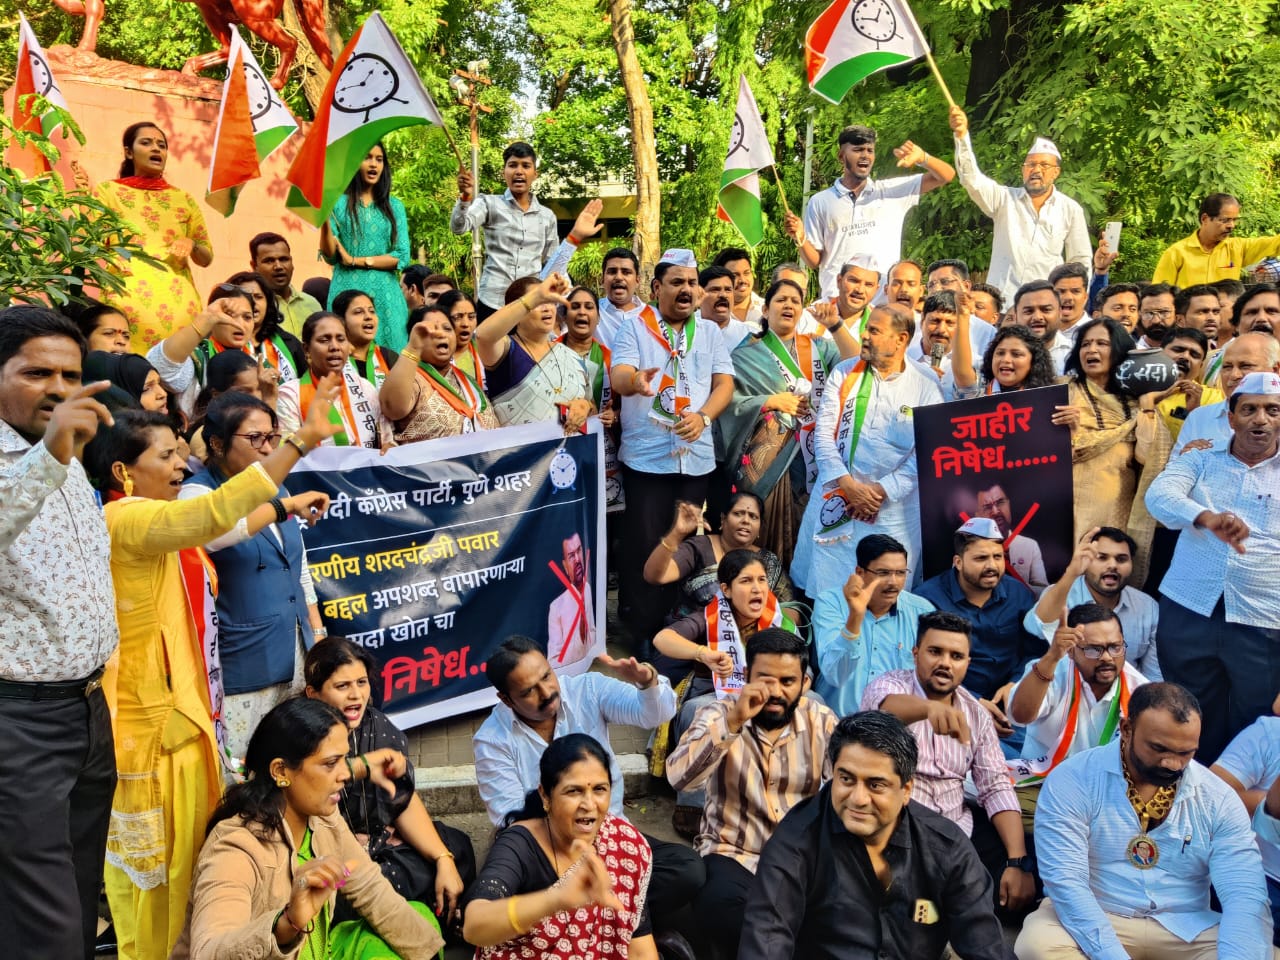 NCP Against Sadabhau Khot | सदाभाऊ खोत यांच्या विरोधात पुणे राष्ट्रवादी काँग्रेस पार्टीचे “जोडे मारो” आंदोलन